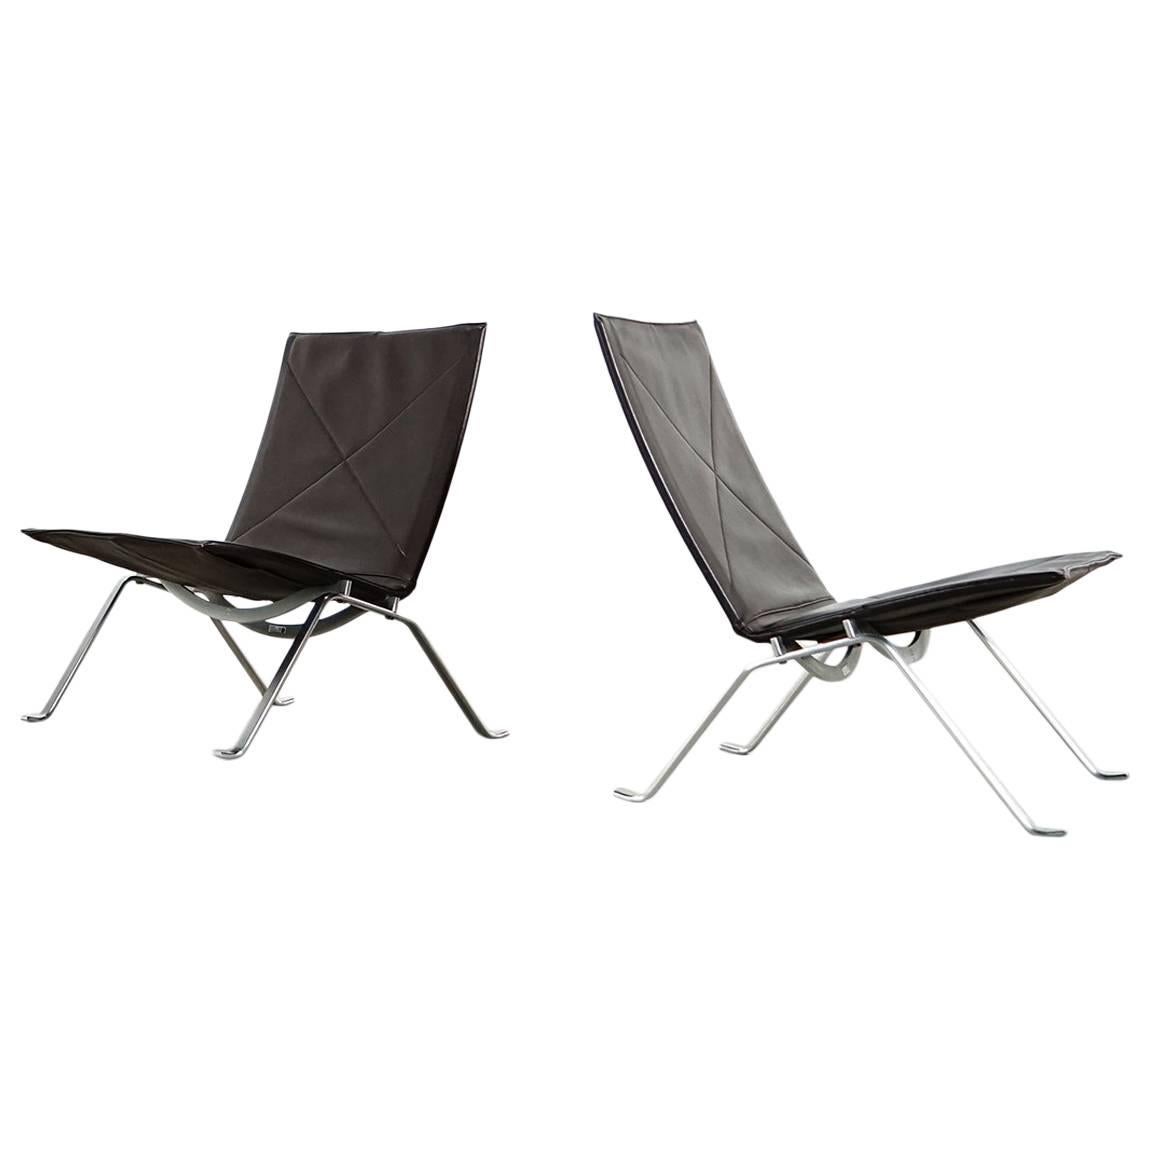 Two Poul Kjaerholm, PK22 Lounge Chair, 1986 by Fritz Hansen, Denmark